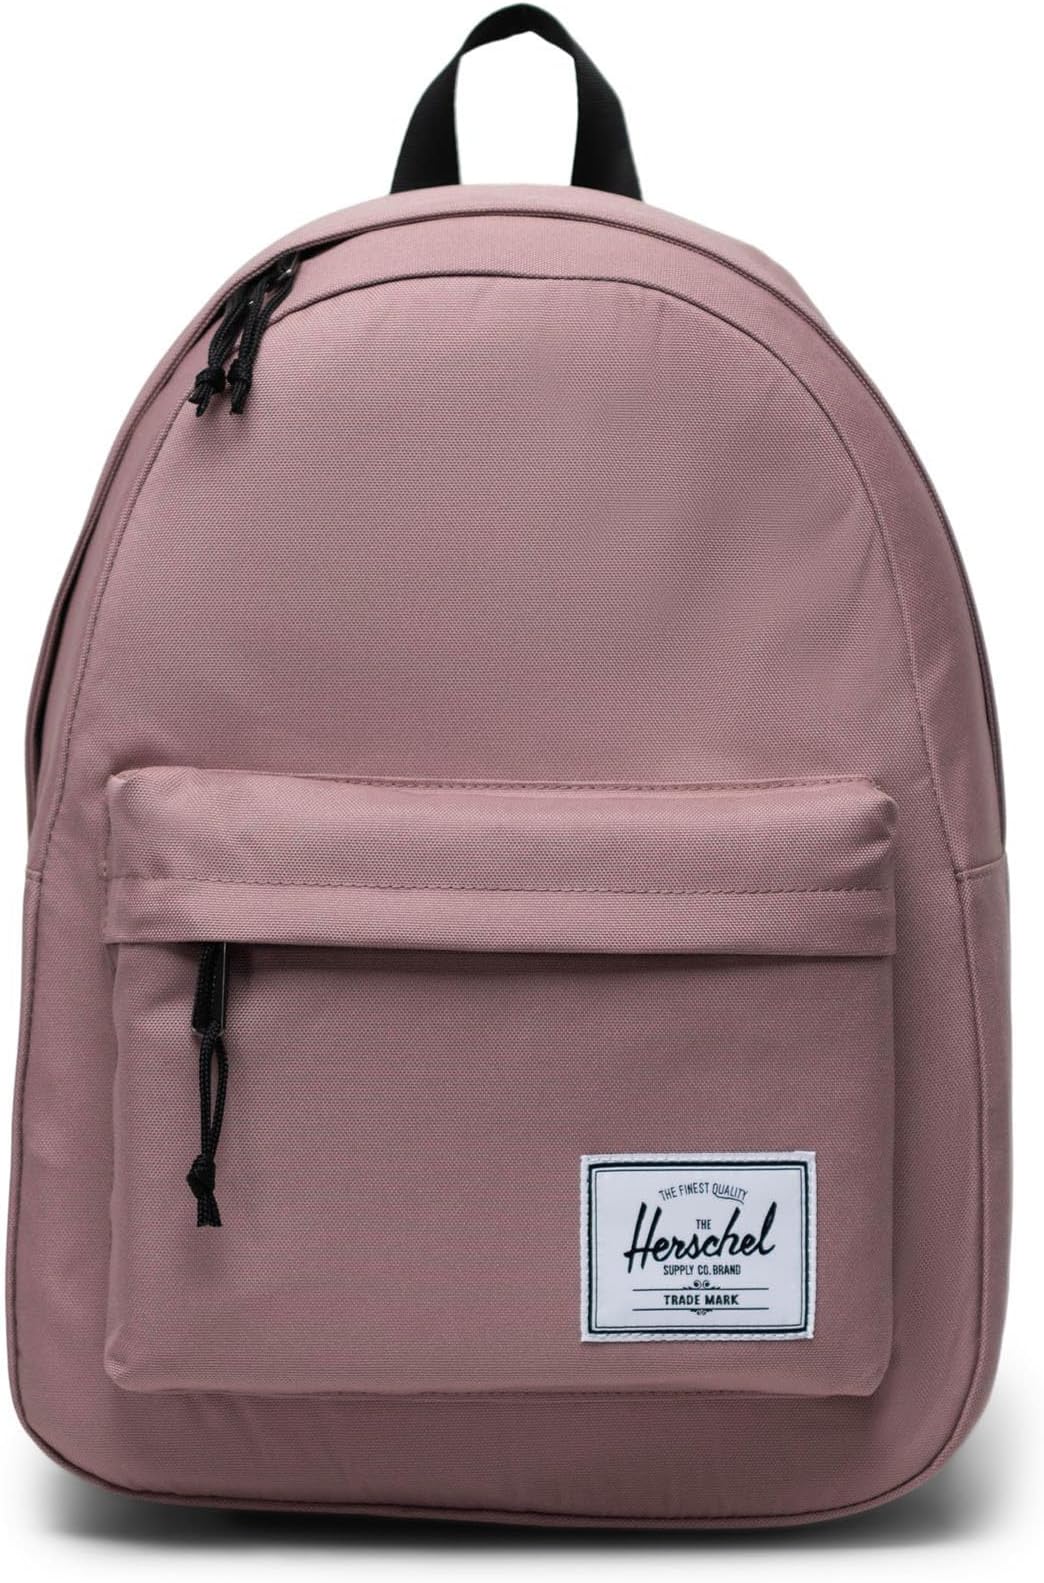 рюкзак retreat backpack herschel supply co цвет ash rose Рюкзак Classic Backpack Herschel Supply Co., цвет Ash Rose